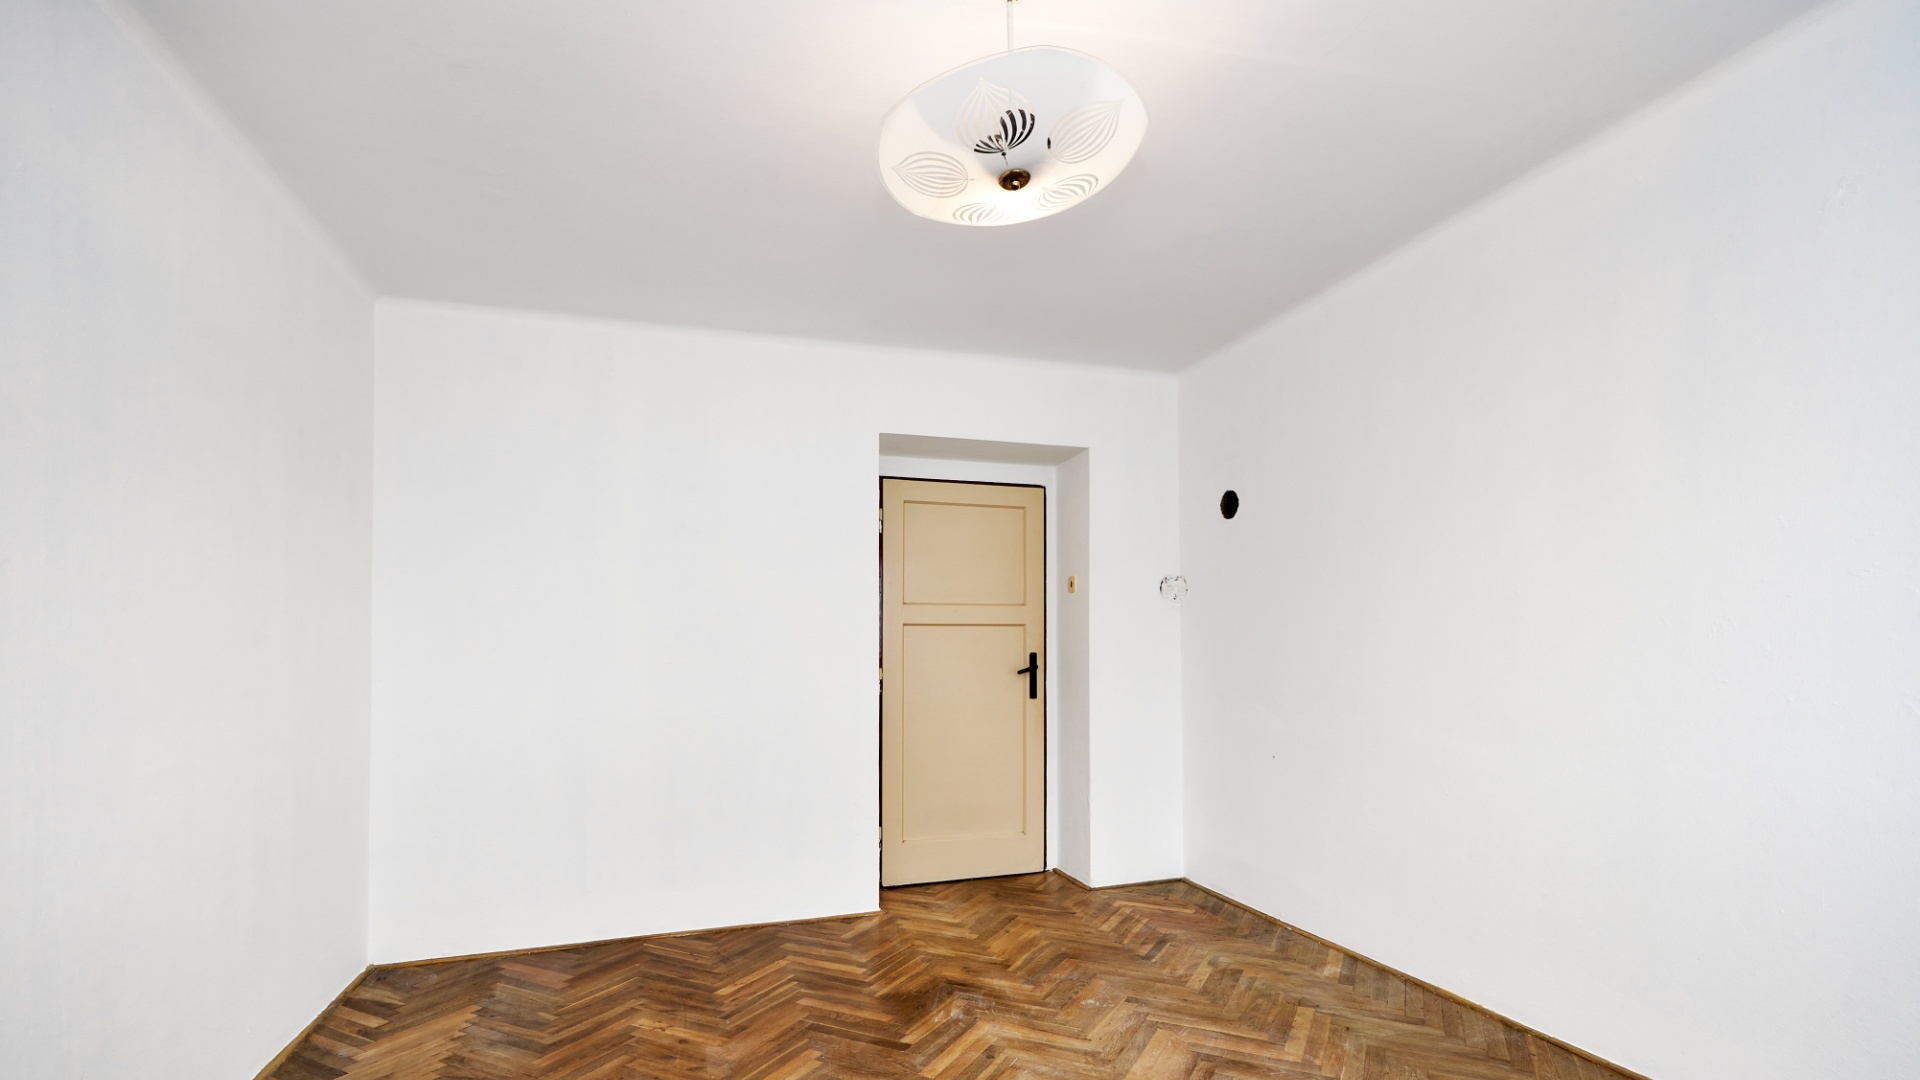 Prodej bytu 2+1, 56 m², Přelouč, ul. Veverkova